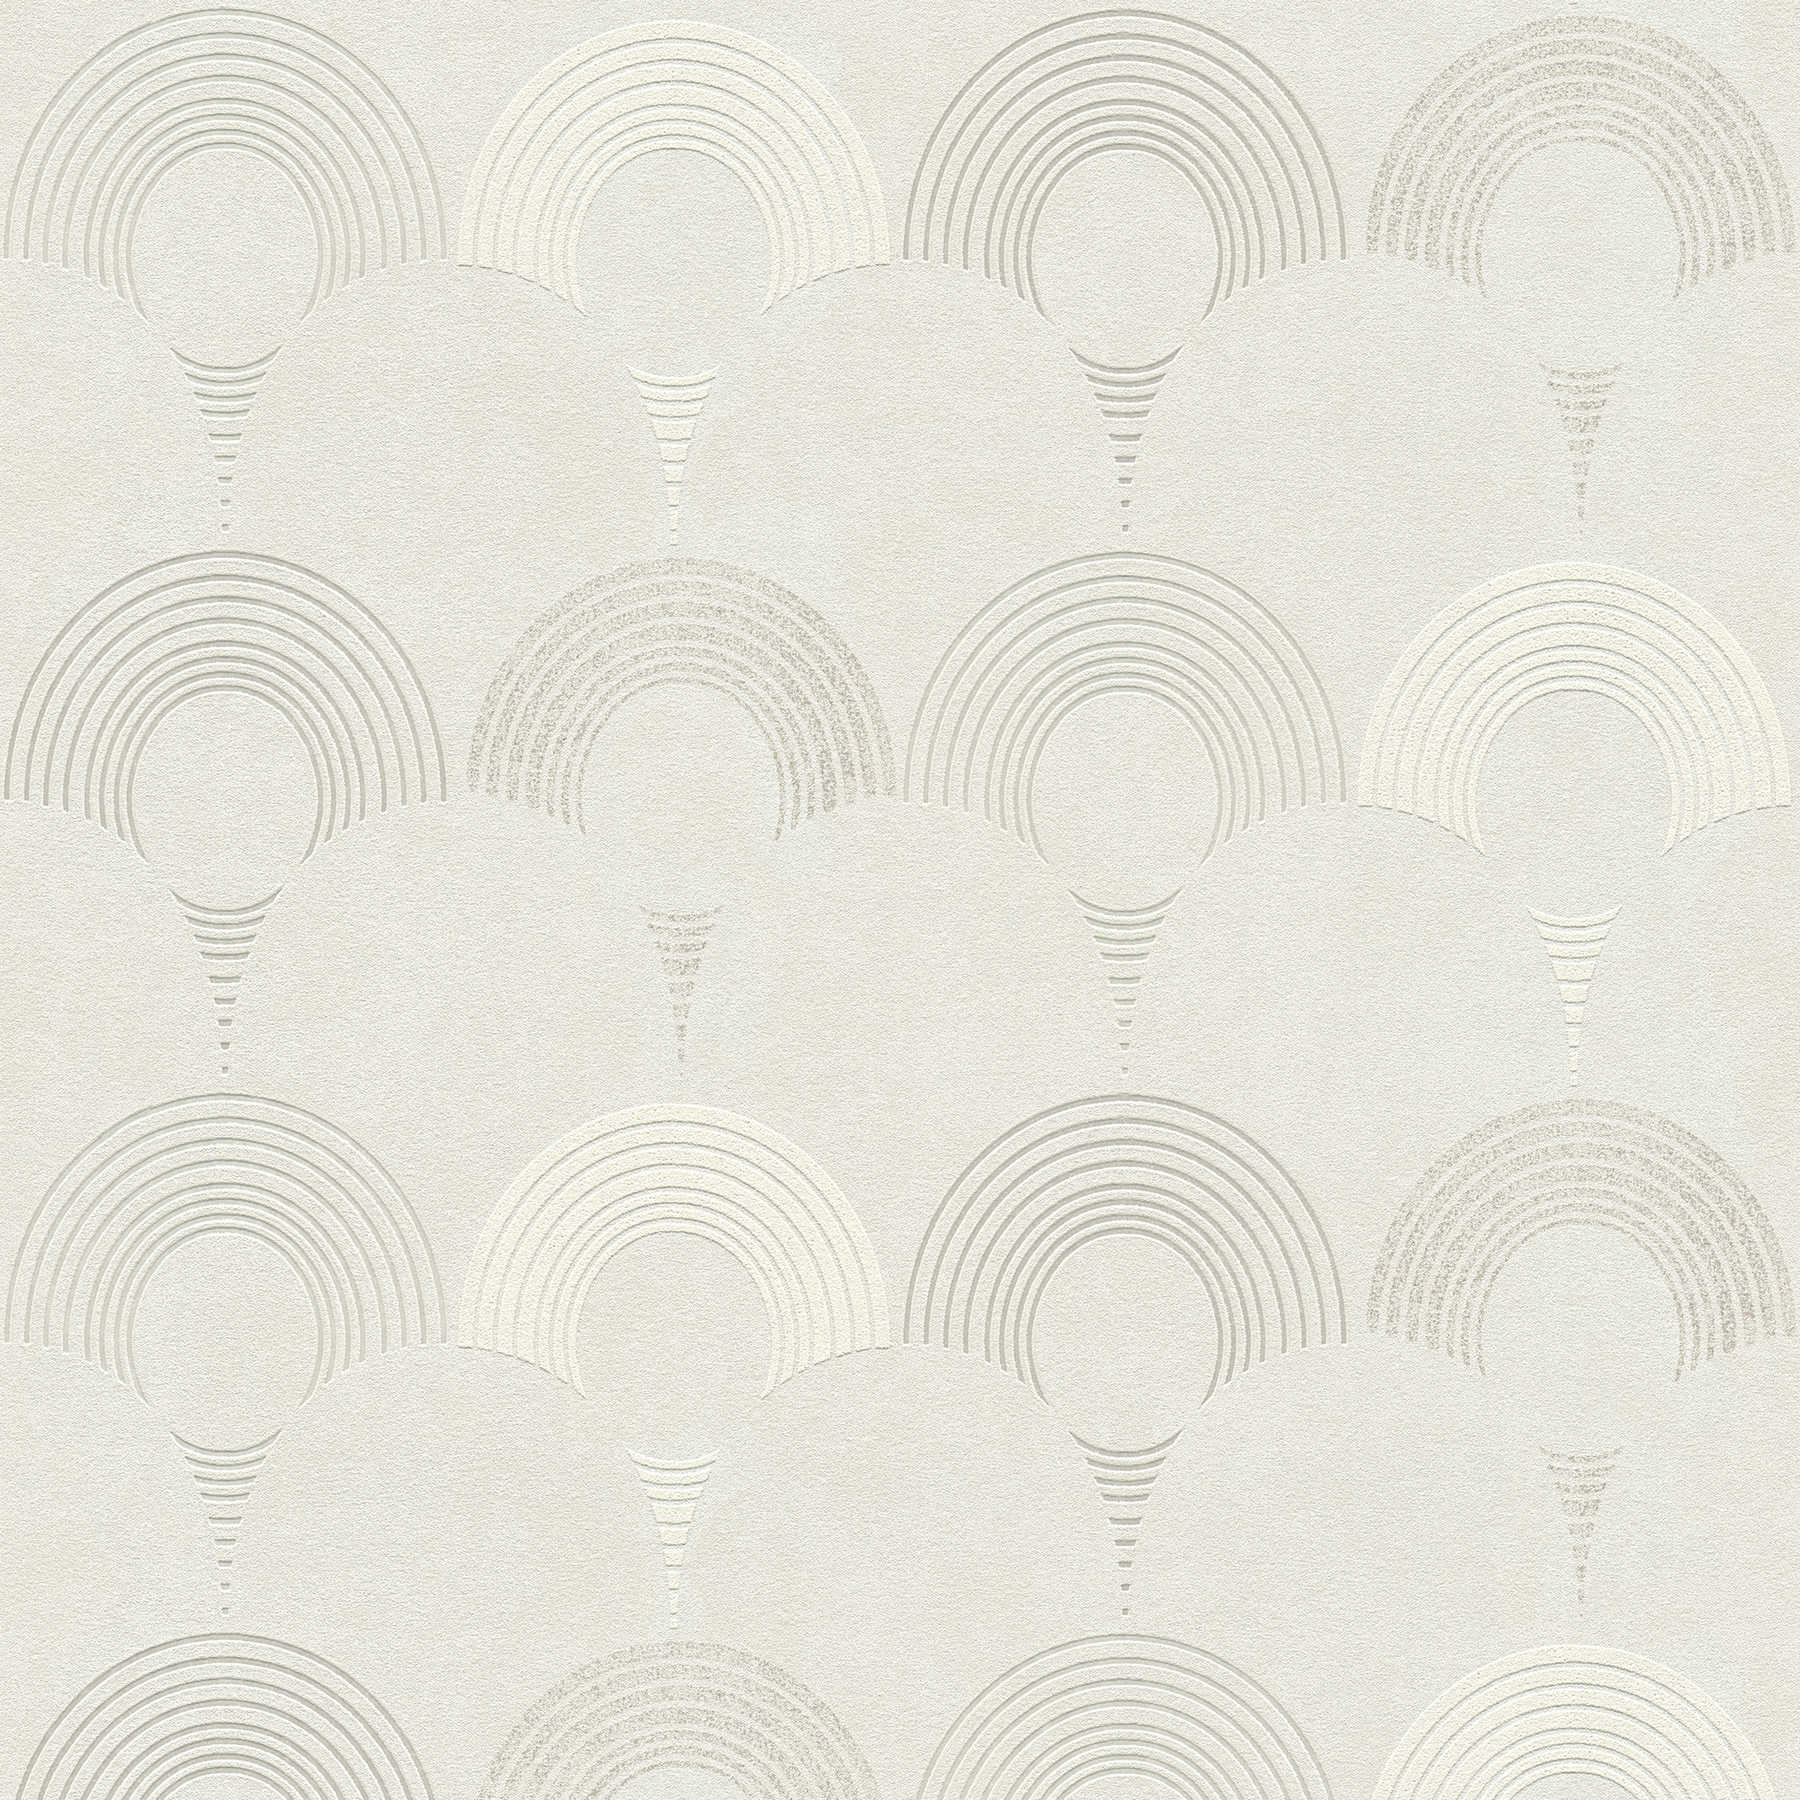         Papier peint intissé style rétro, motifs circulaires géométriques - gris, argent, blanc
    